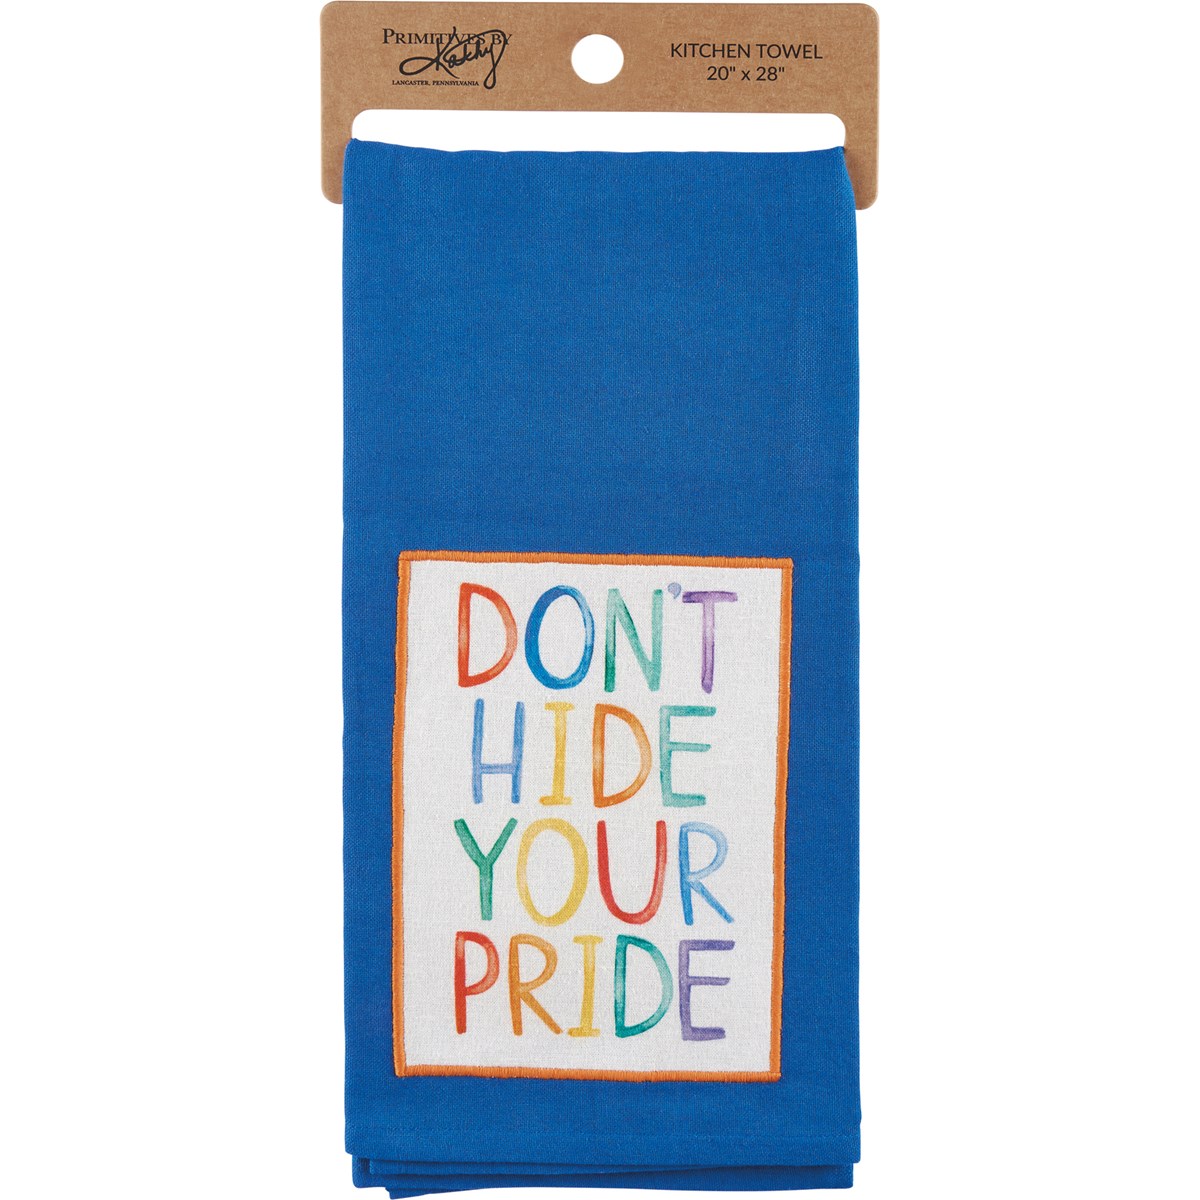 Kitchen Towel - Don't Hide Your Pride - 20" x 28" - Cotton